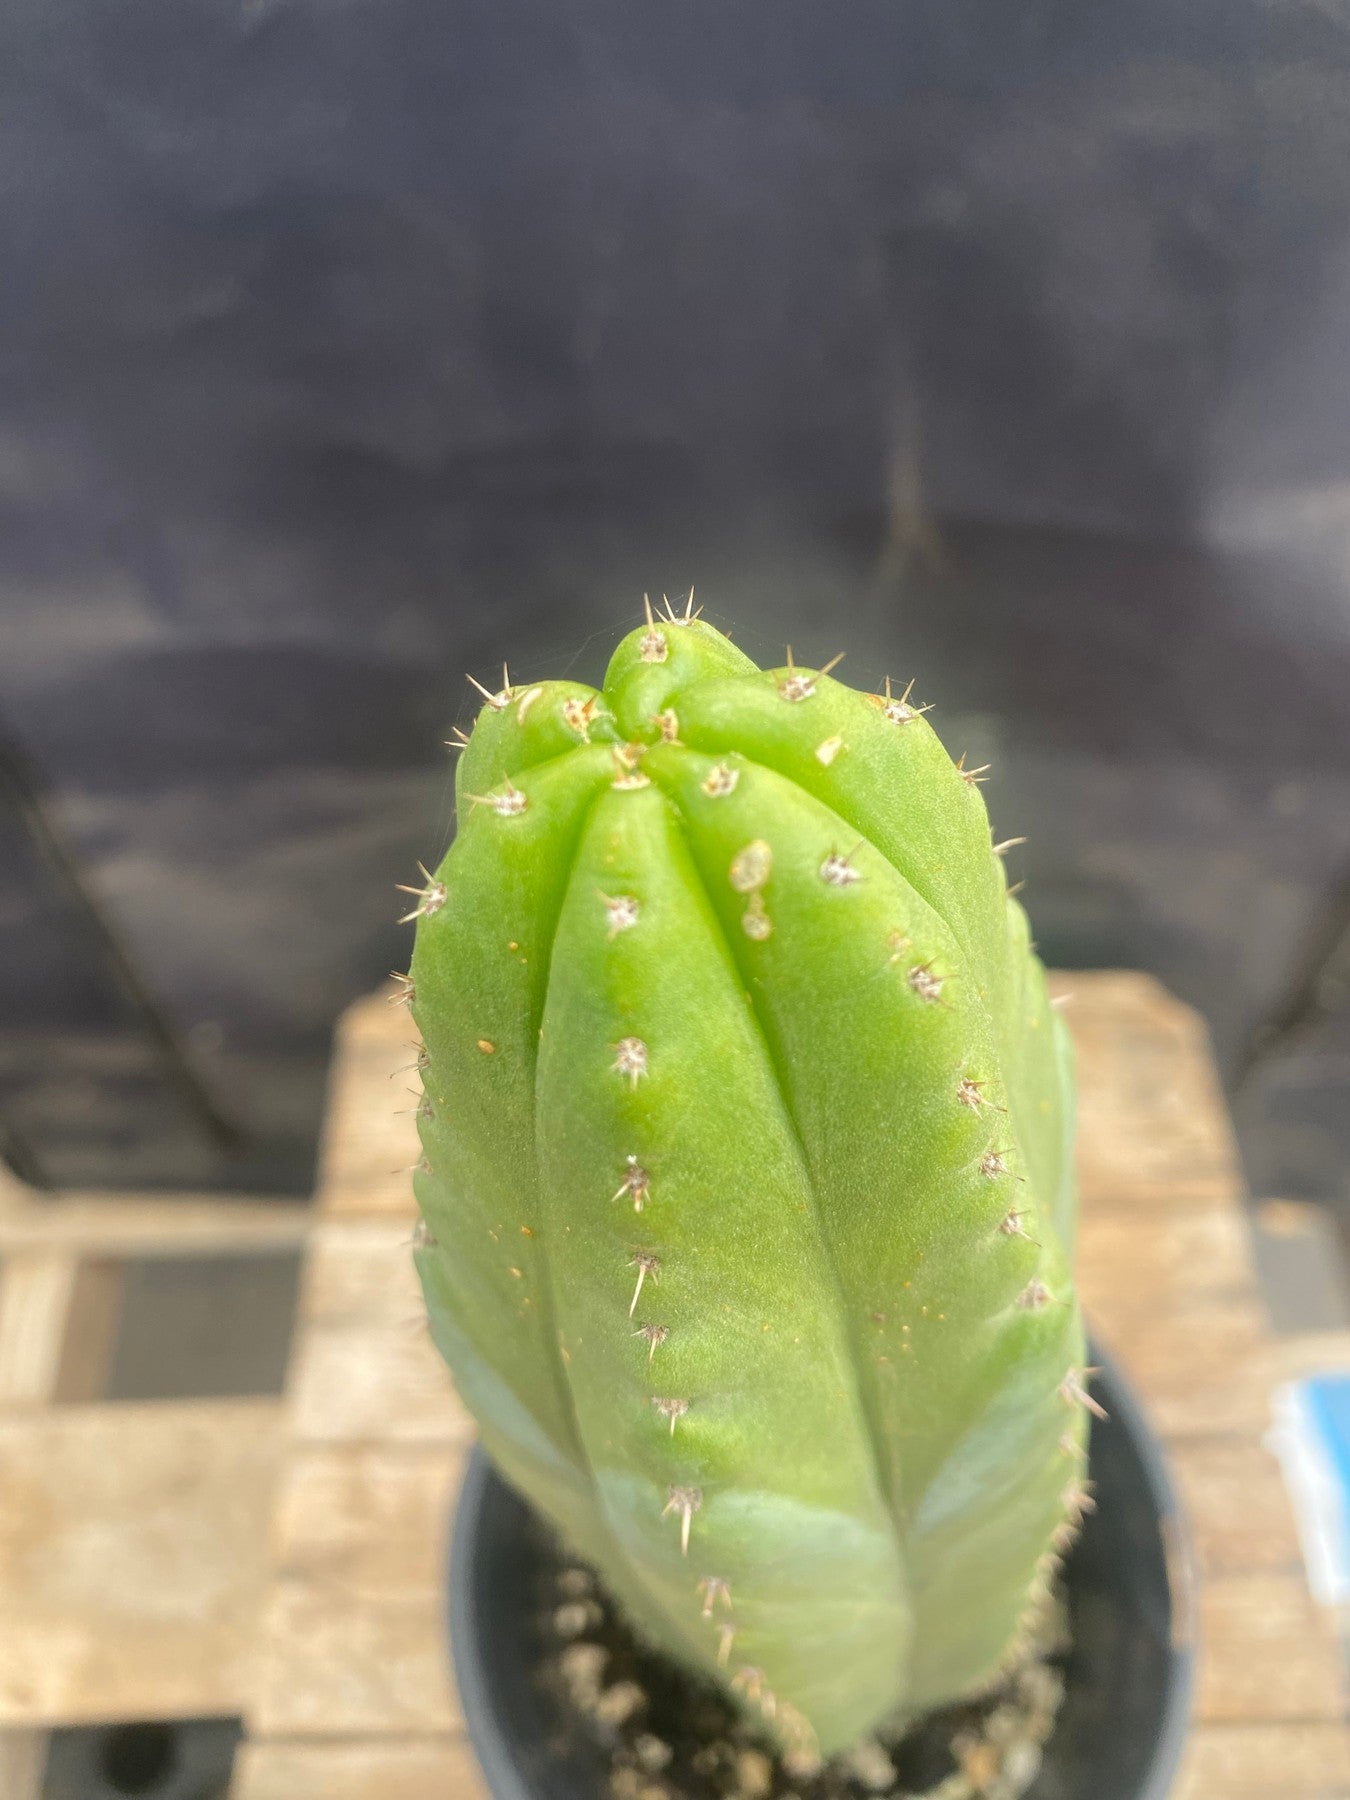 #EC46 EXACT Trichocereus Pachanoi "Awful" Cactus 10.5”-Cactus - Large - Exact-The Succulent Source